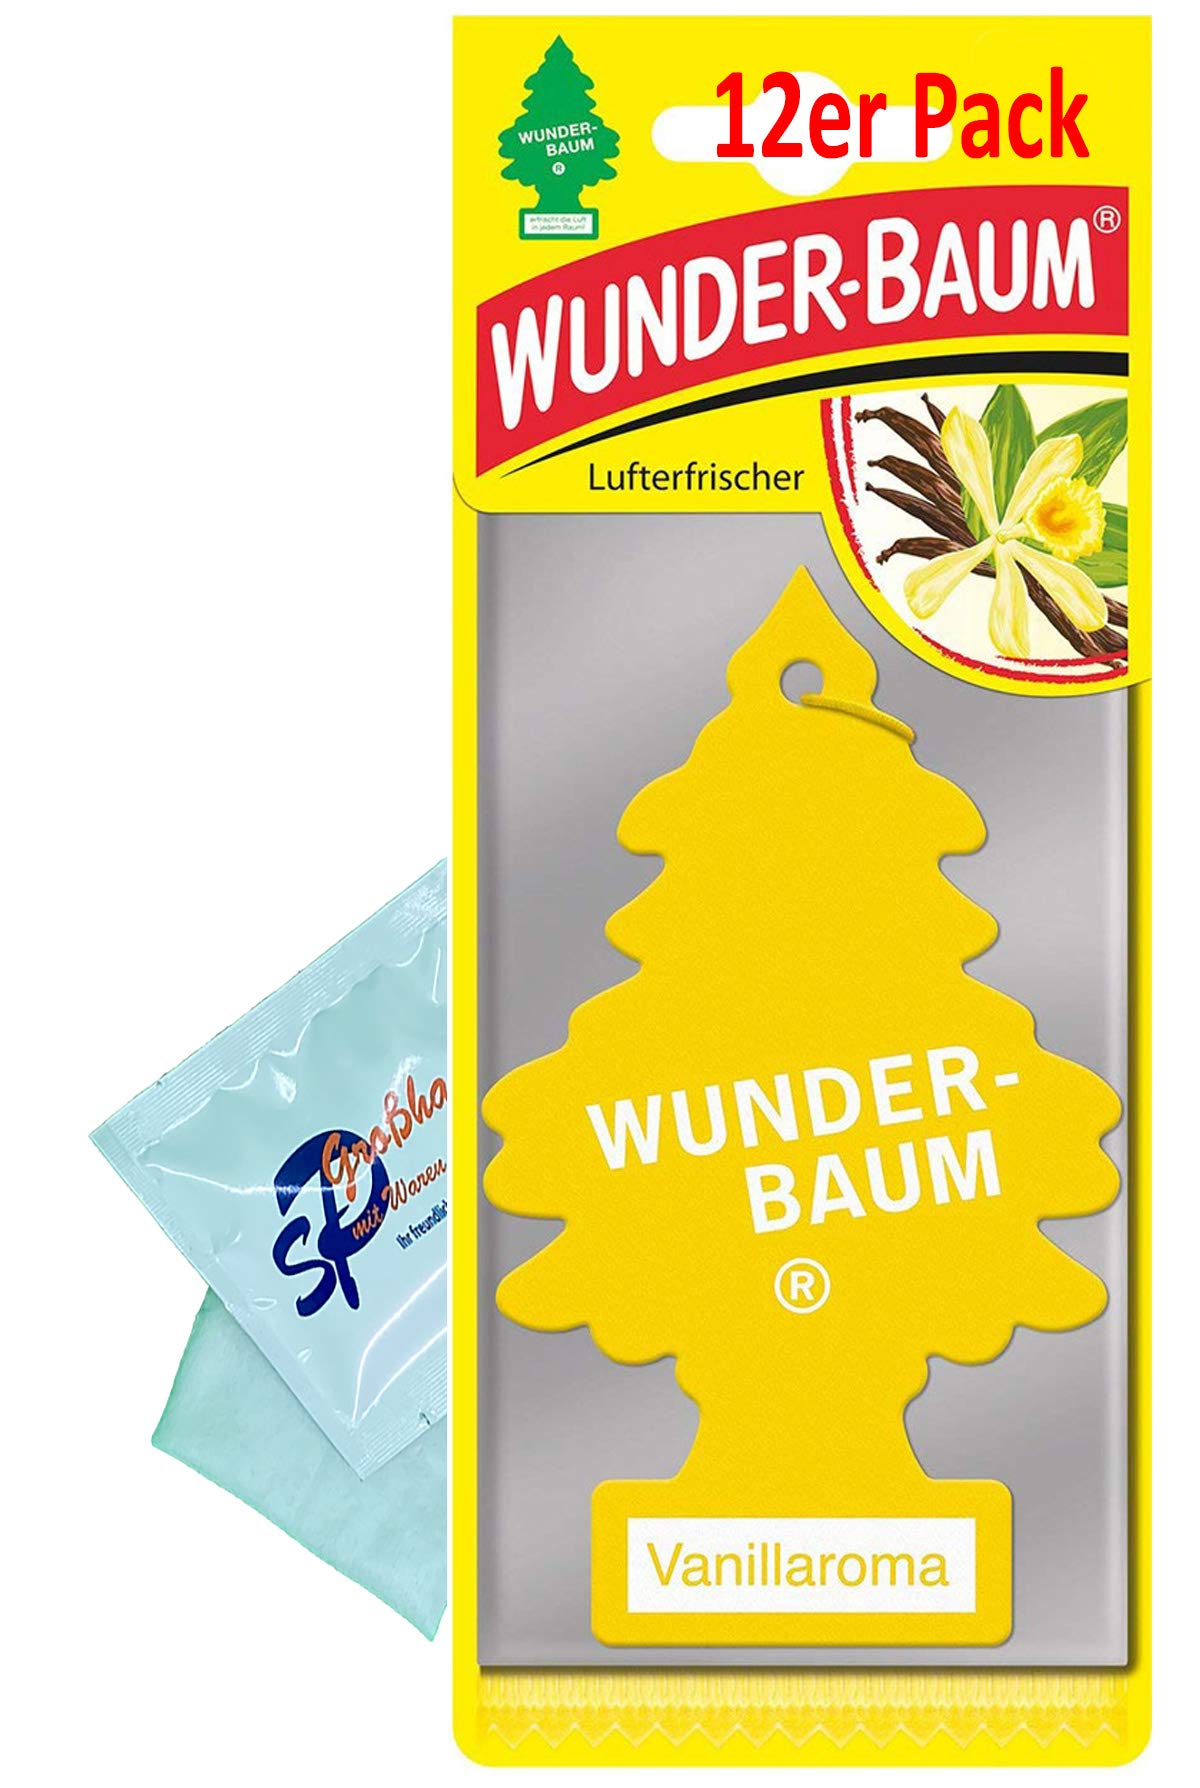 12 Stück Vanille Wunder-Baum Lufterfrischer Duftbaum inkl. 1 x Glasreinigungstuch von SP Großhandel Gratiszugabe (Vanille) von Wunderbaum